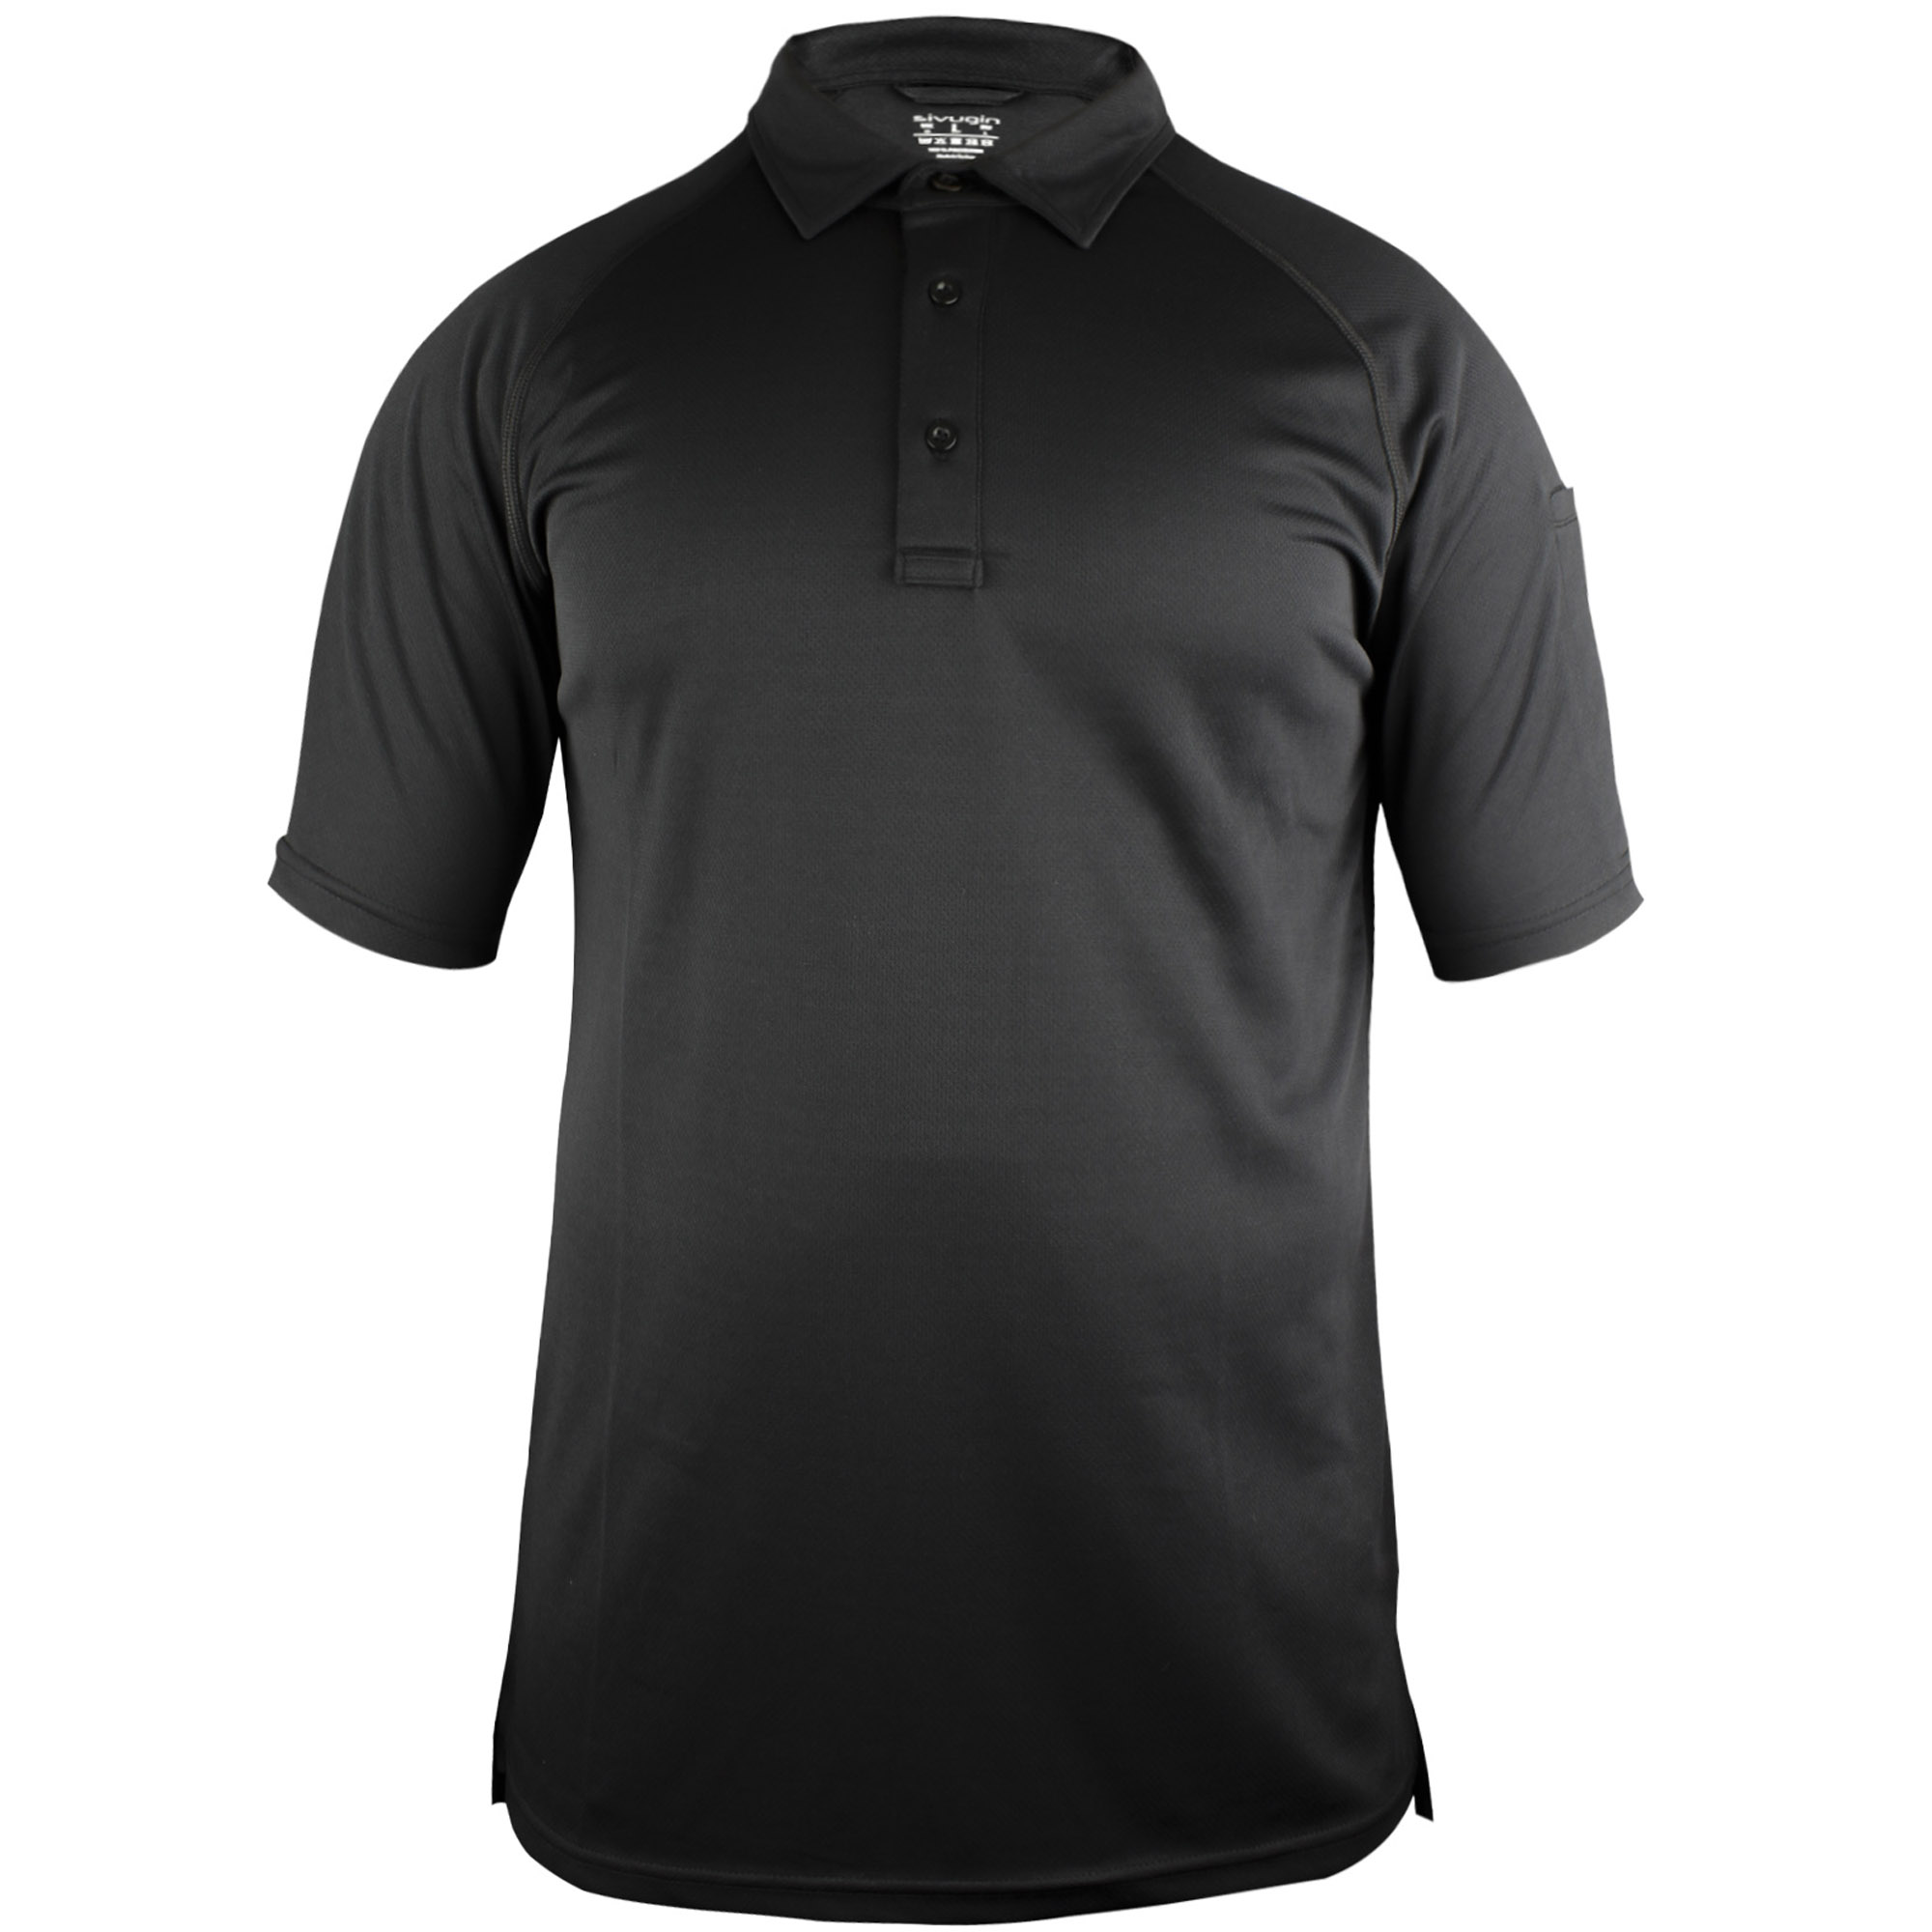 Sivugin Outdoor Polyester Gömlek Yaka Polo Tişört Siyah Erkek